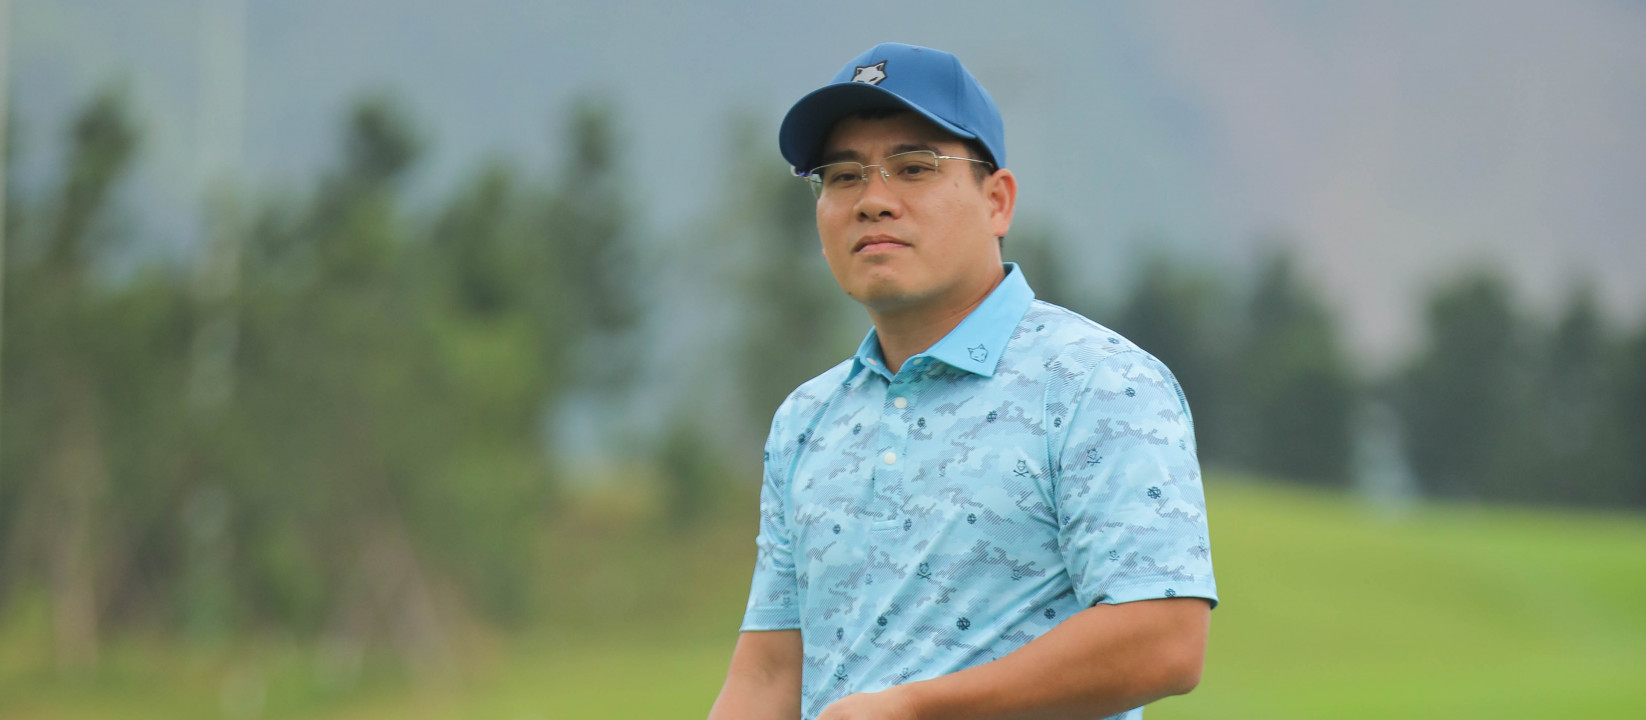 Golfer Nguyễn Việt Dũng: “Mình không nghĩ mình có thể giành chiến thắng”